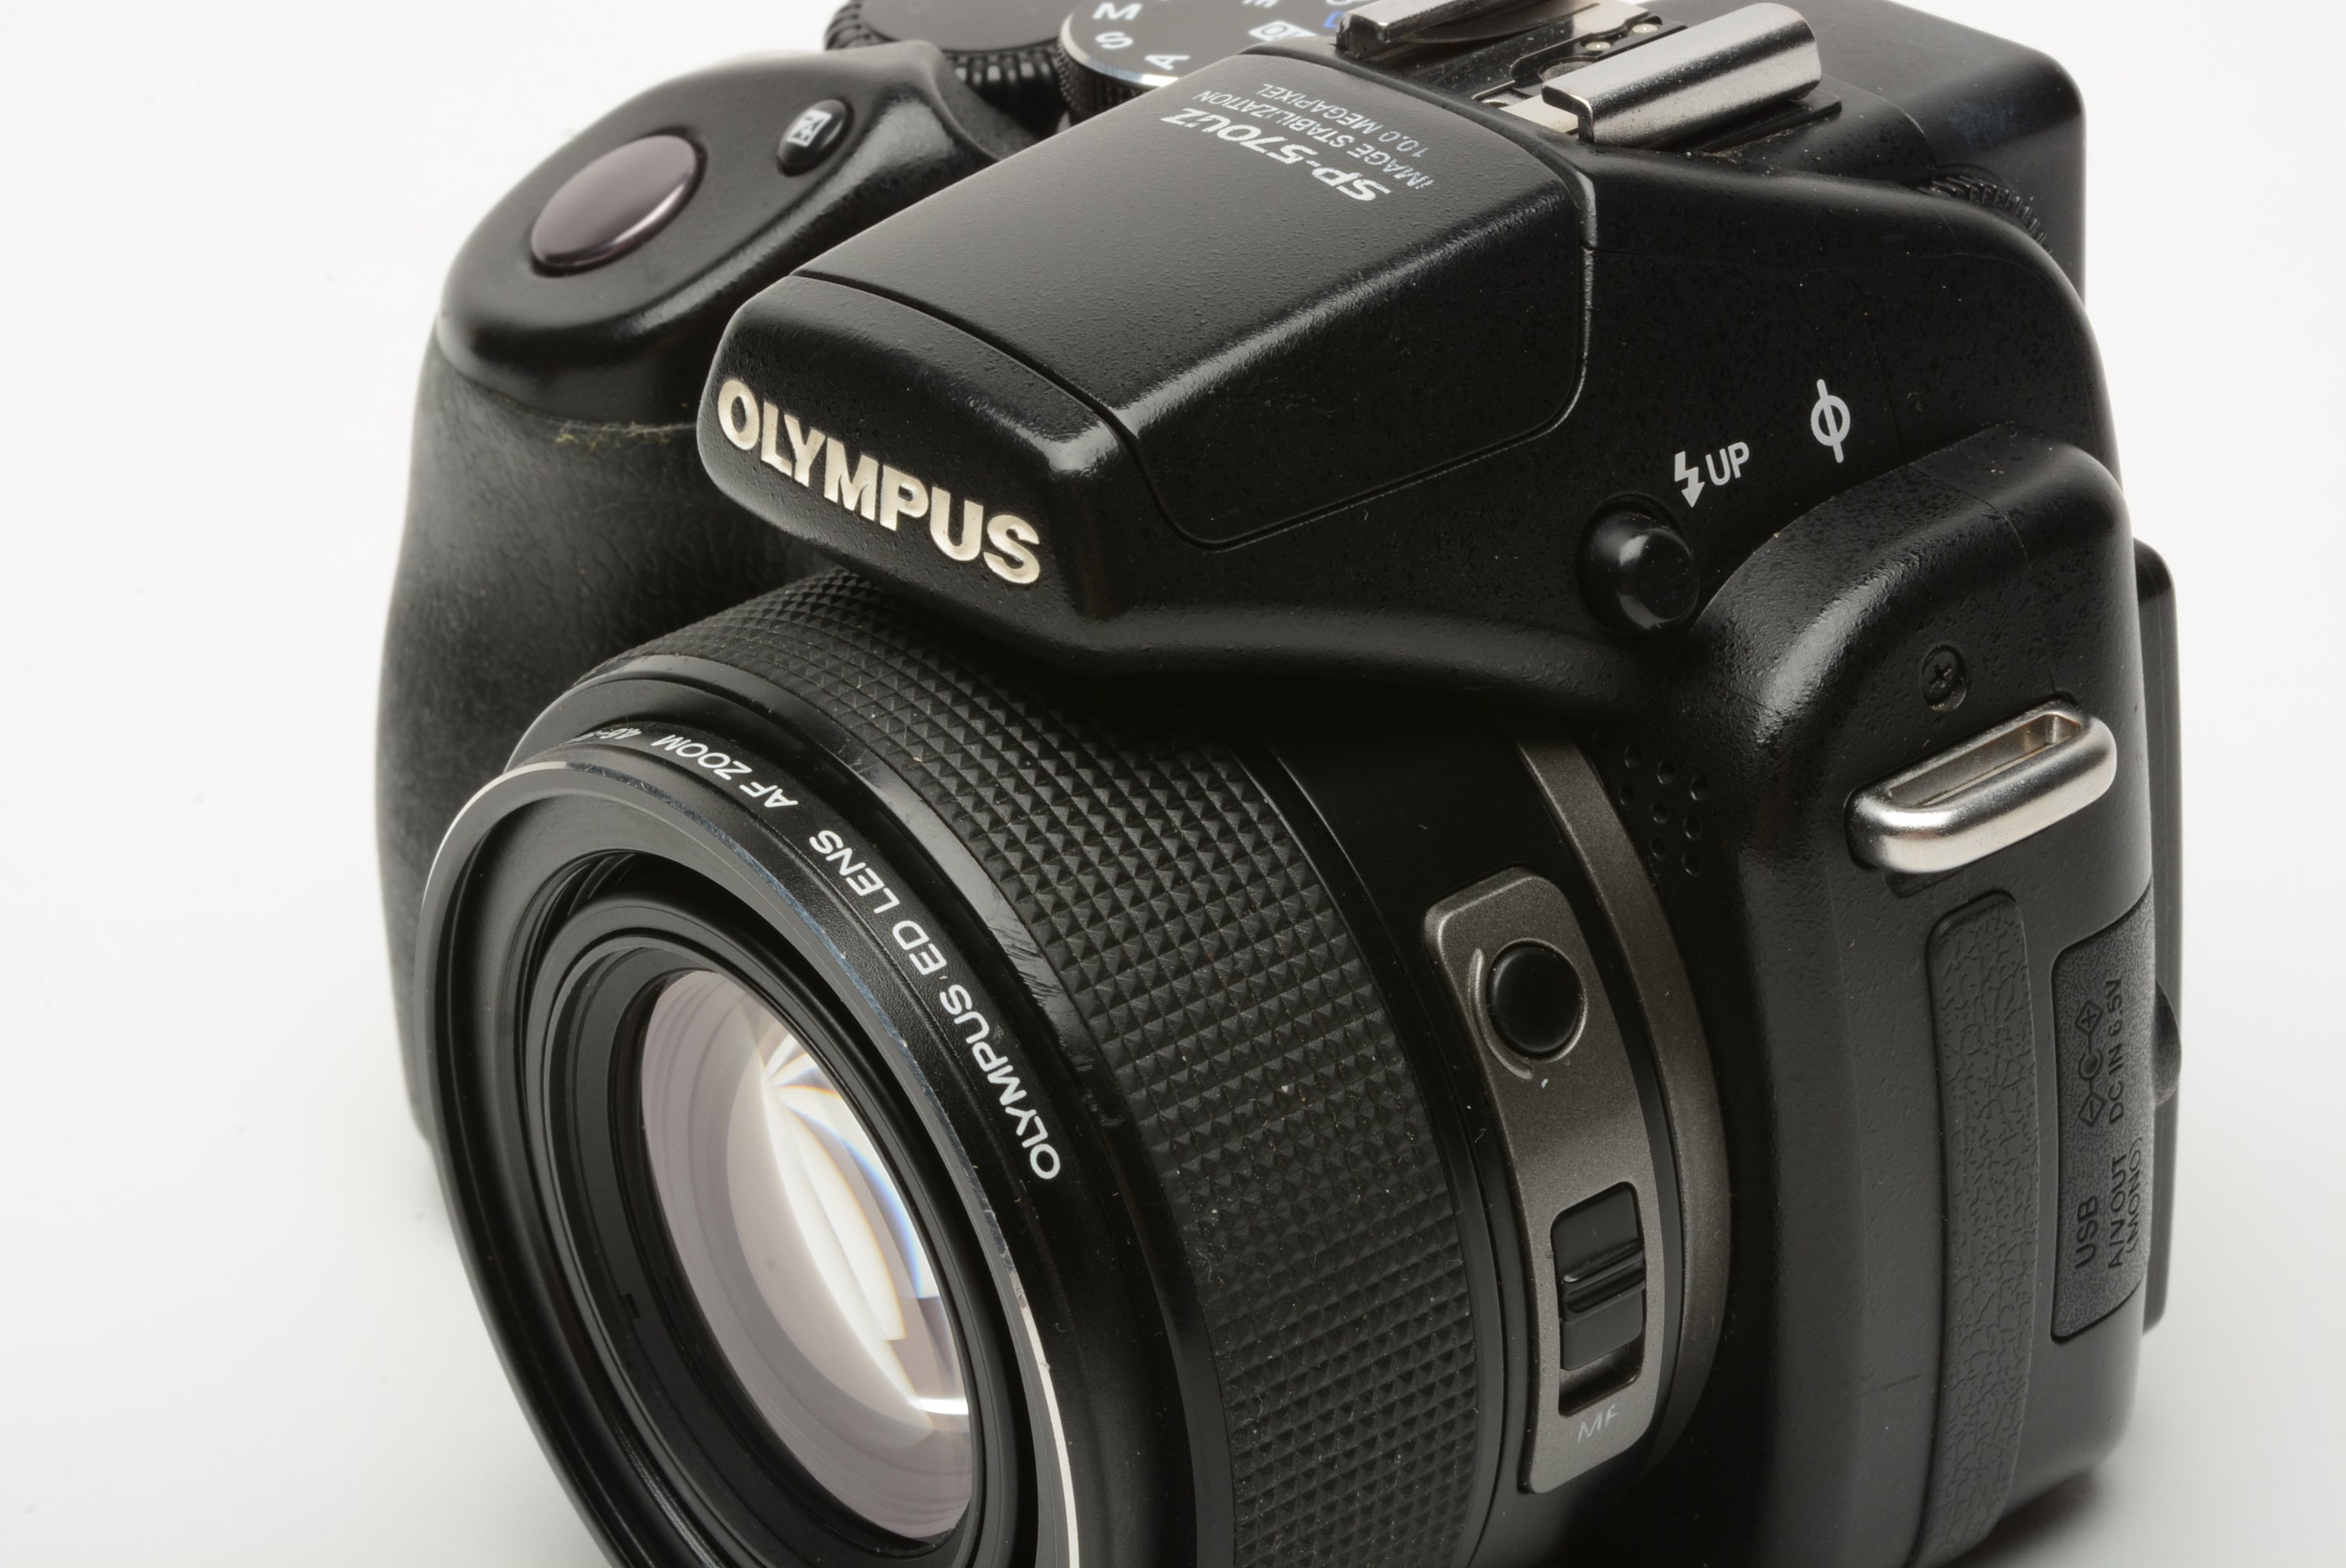 Olympus SP570UZ Digital Point&Shoot, Lowepro case, strap, cap, and 